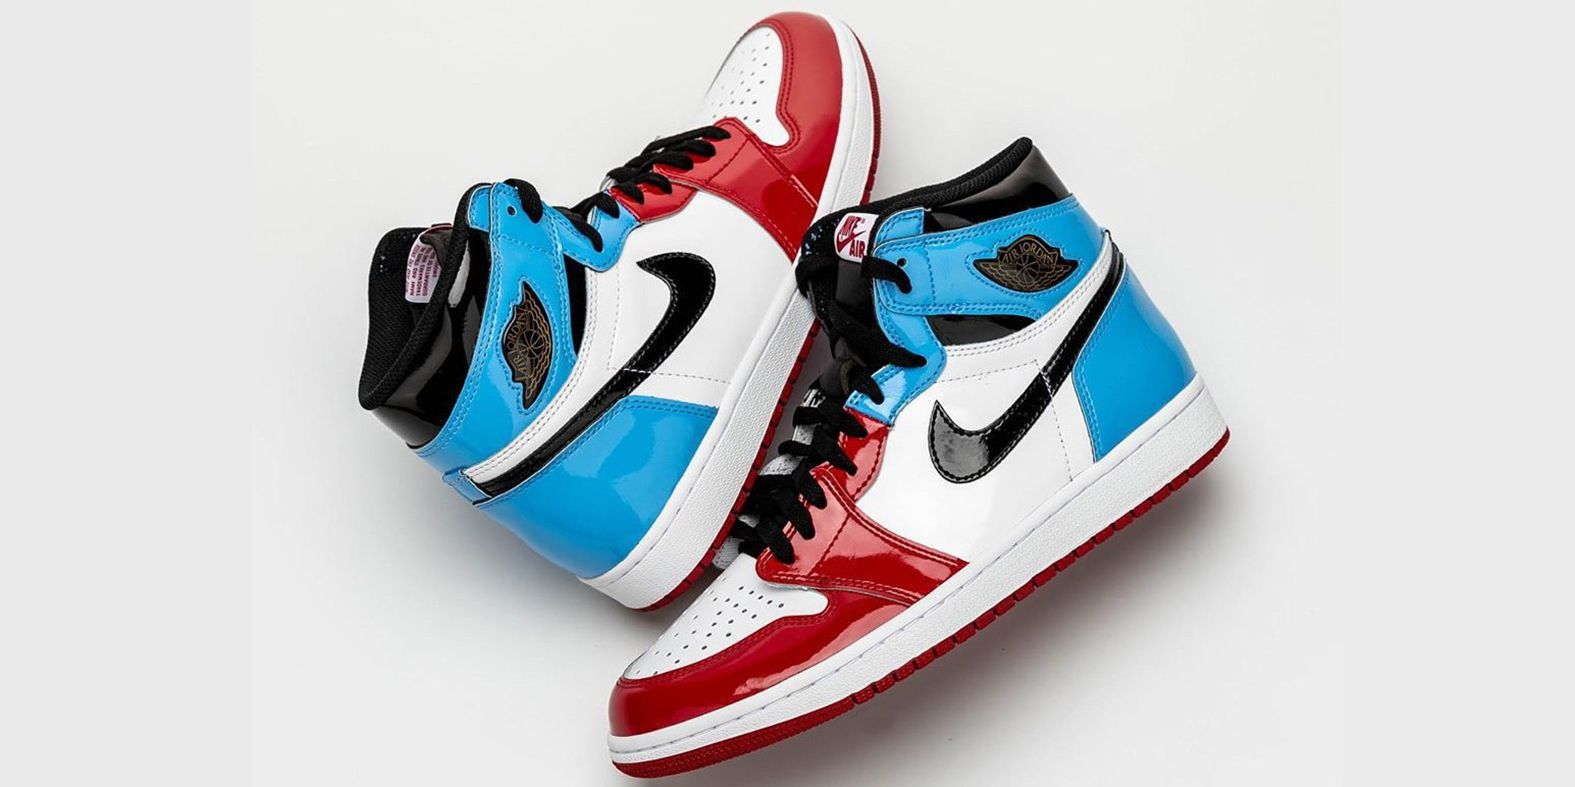 Le sneakers uomo Nike Air Jordan da avere per l'autunno 2019 sono queste